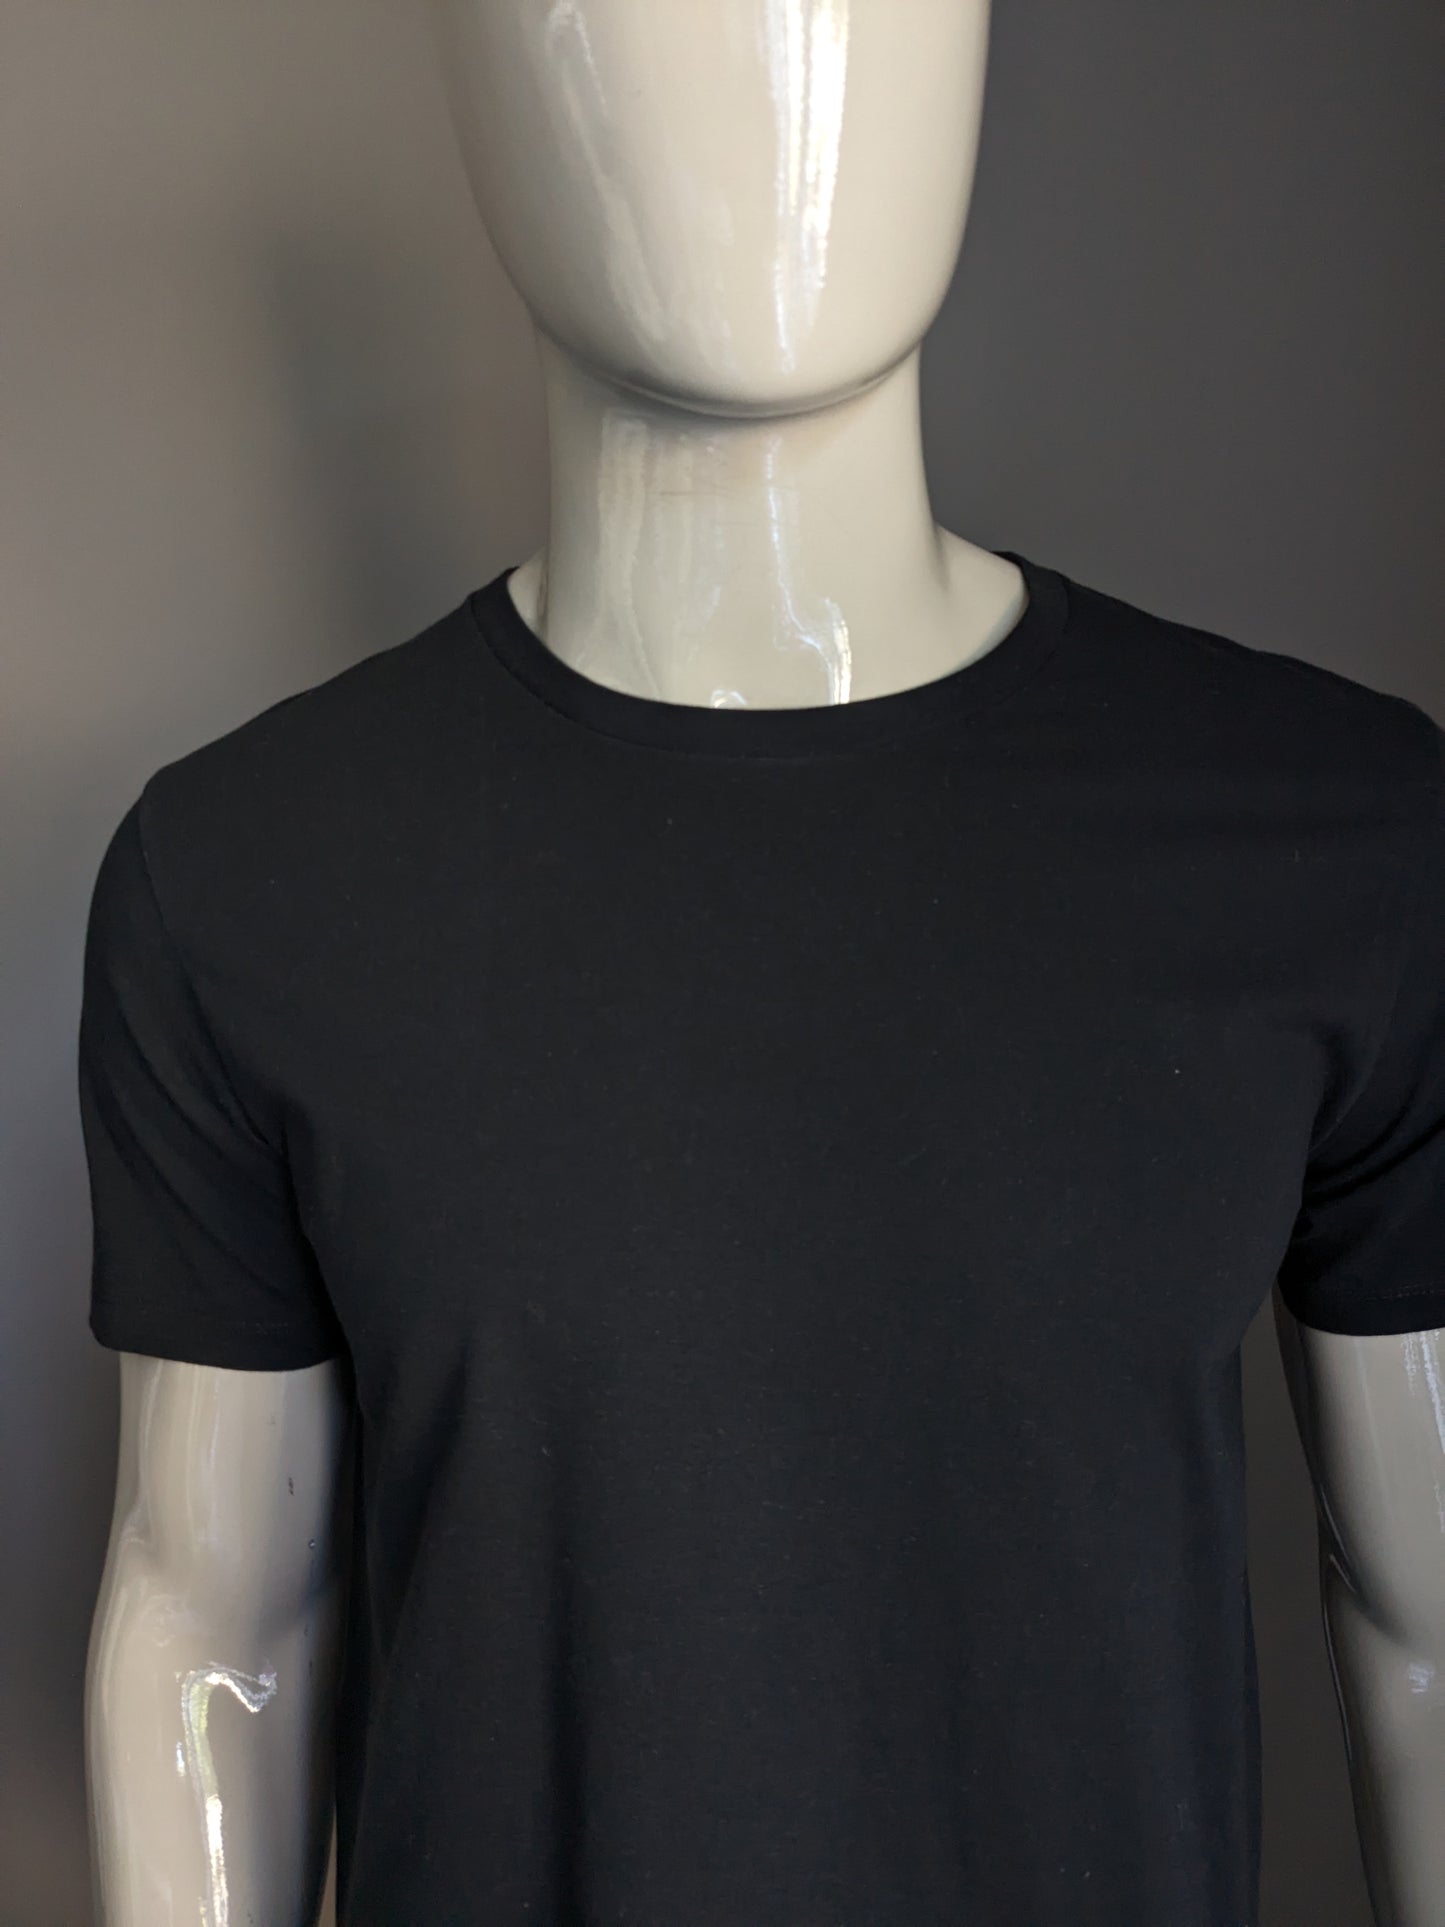 Calvin Small Shirt. Colorato nero. Taglia M.